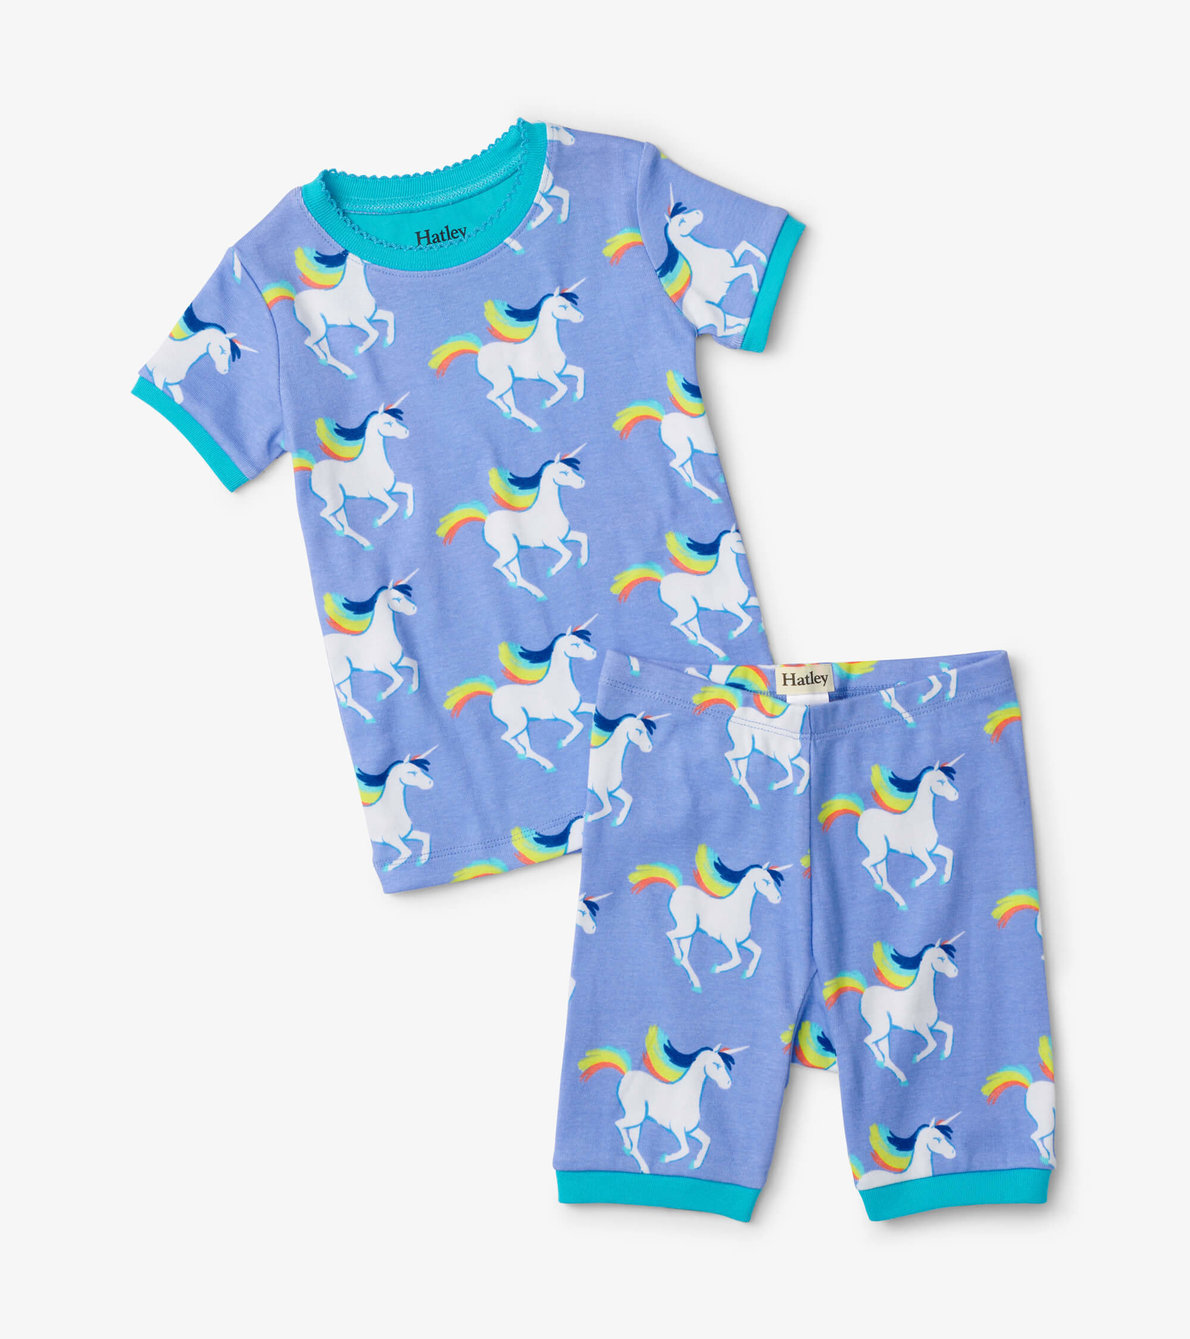 View larger image of Galloping Unicorn Short Pajama Set